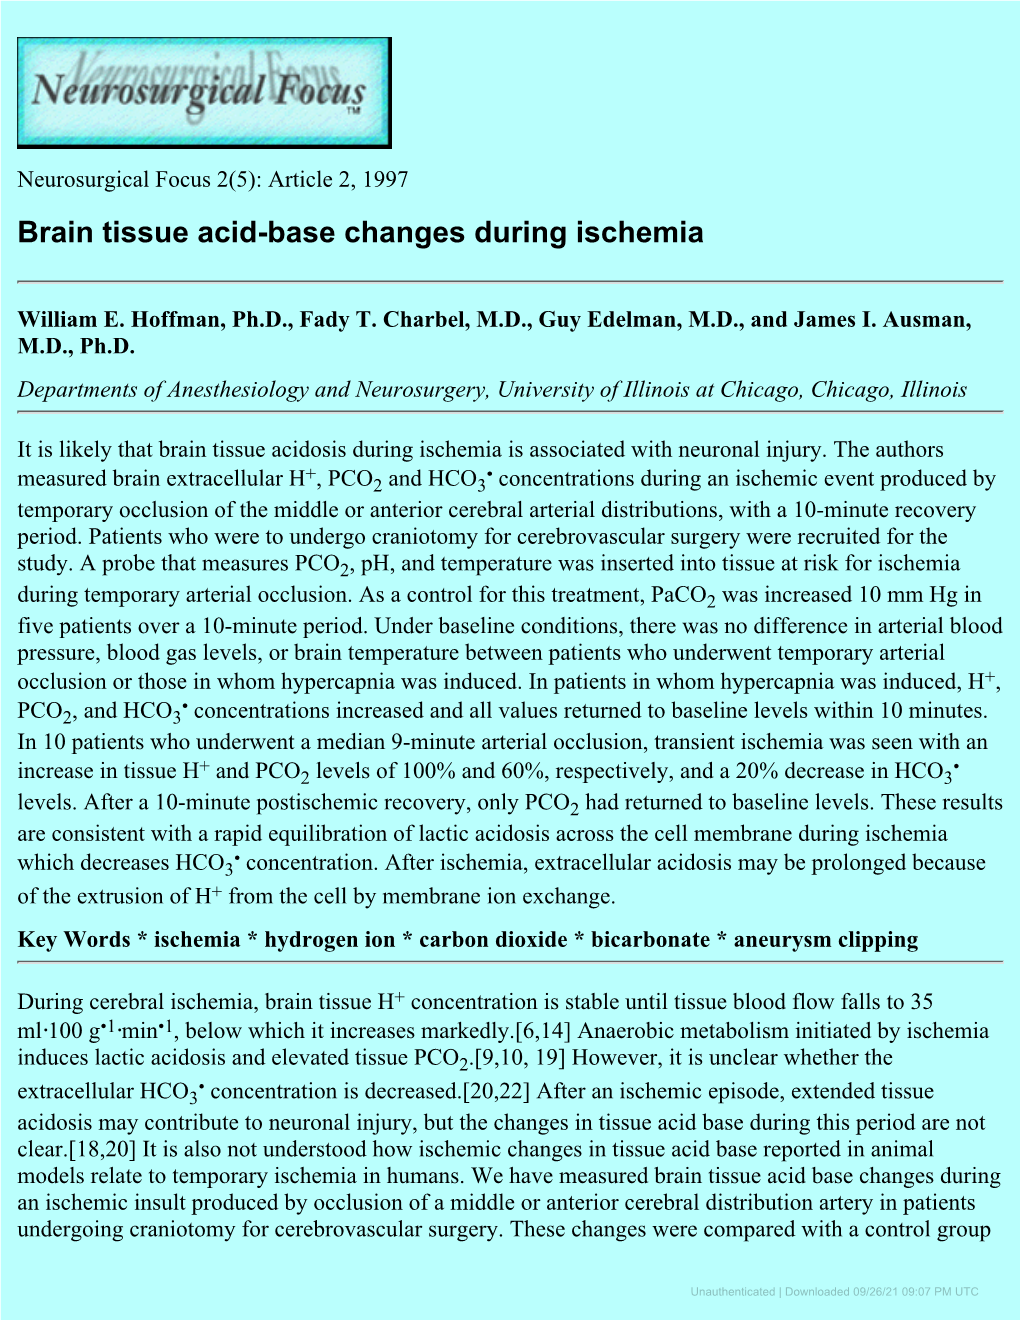 Brain Tissue Acid-Base Changes During Ischemia